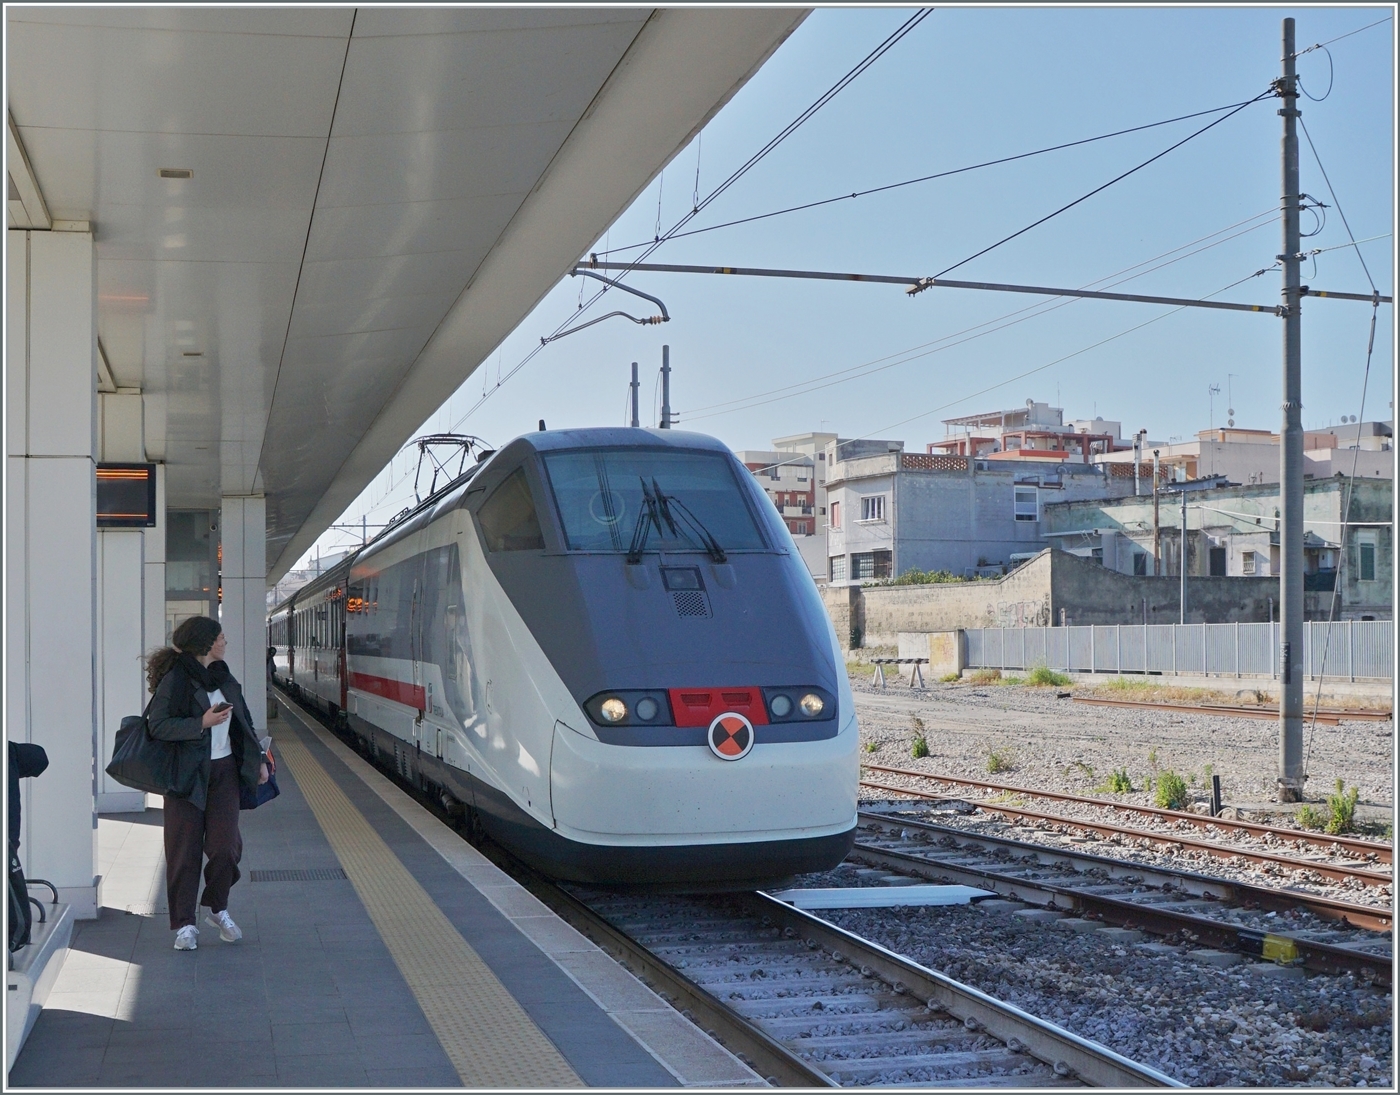 Der FS Trenitalia IC 608 von Lecce (ab 6:23) nach Bologna Centrale (an 15:00) erreicht Trani. 

22. April 2023